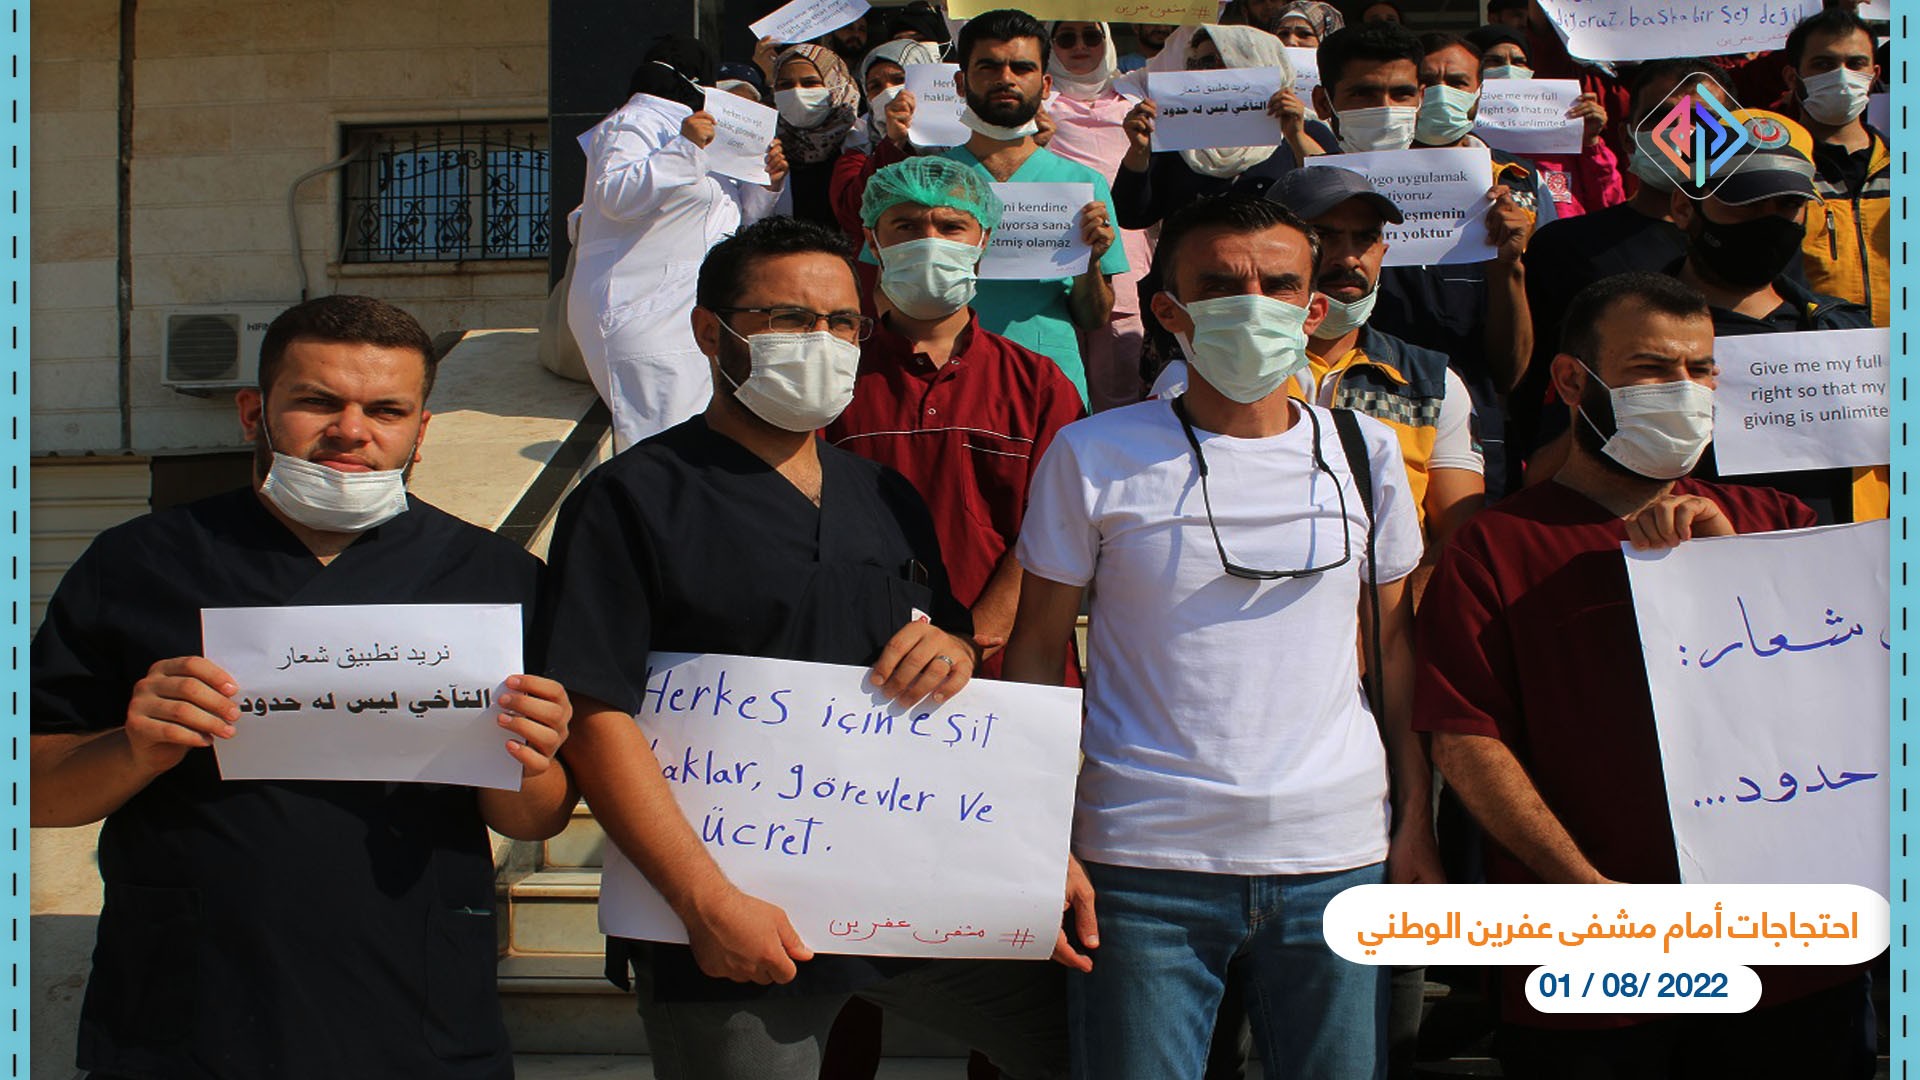 احتجاجات أمام مشفى عفرين الوطني عدسة أمين العلي آرام3.jpg